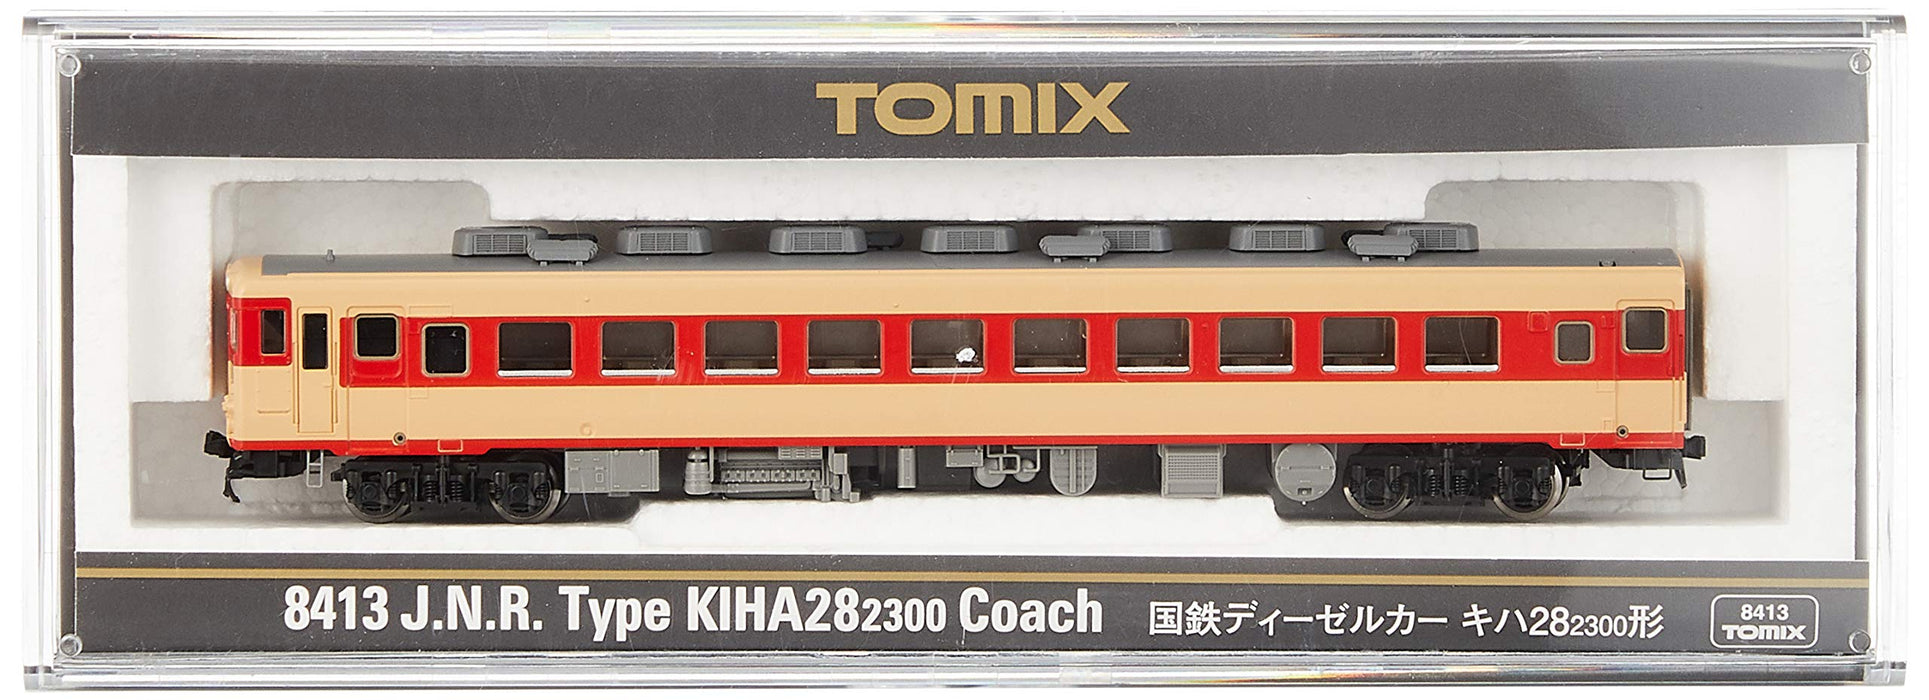 Tomytec Tomix N Gauge Kiha28-2300 8413 Model Diesel Railway Car